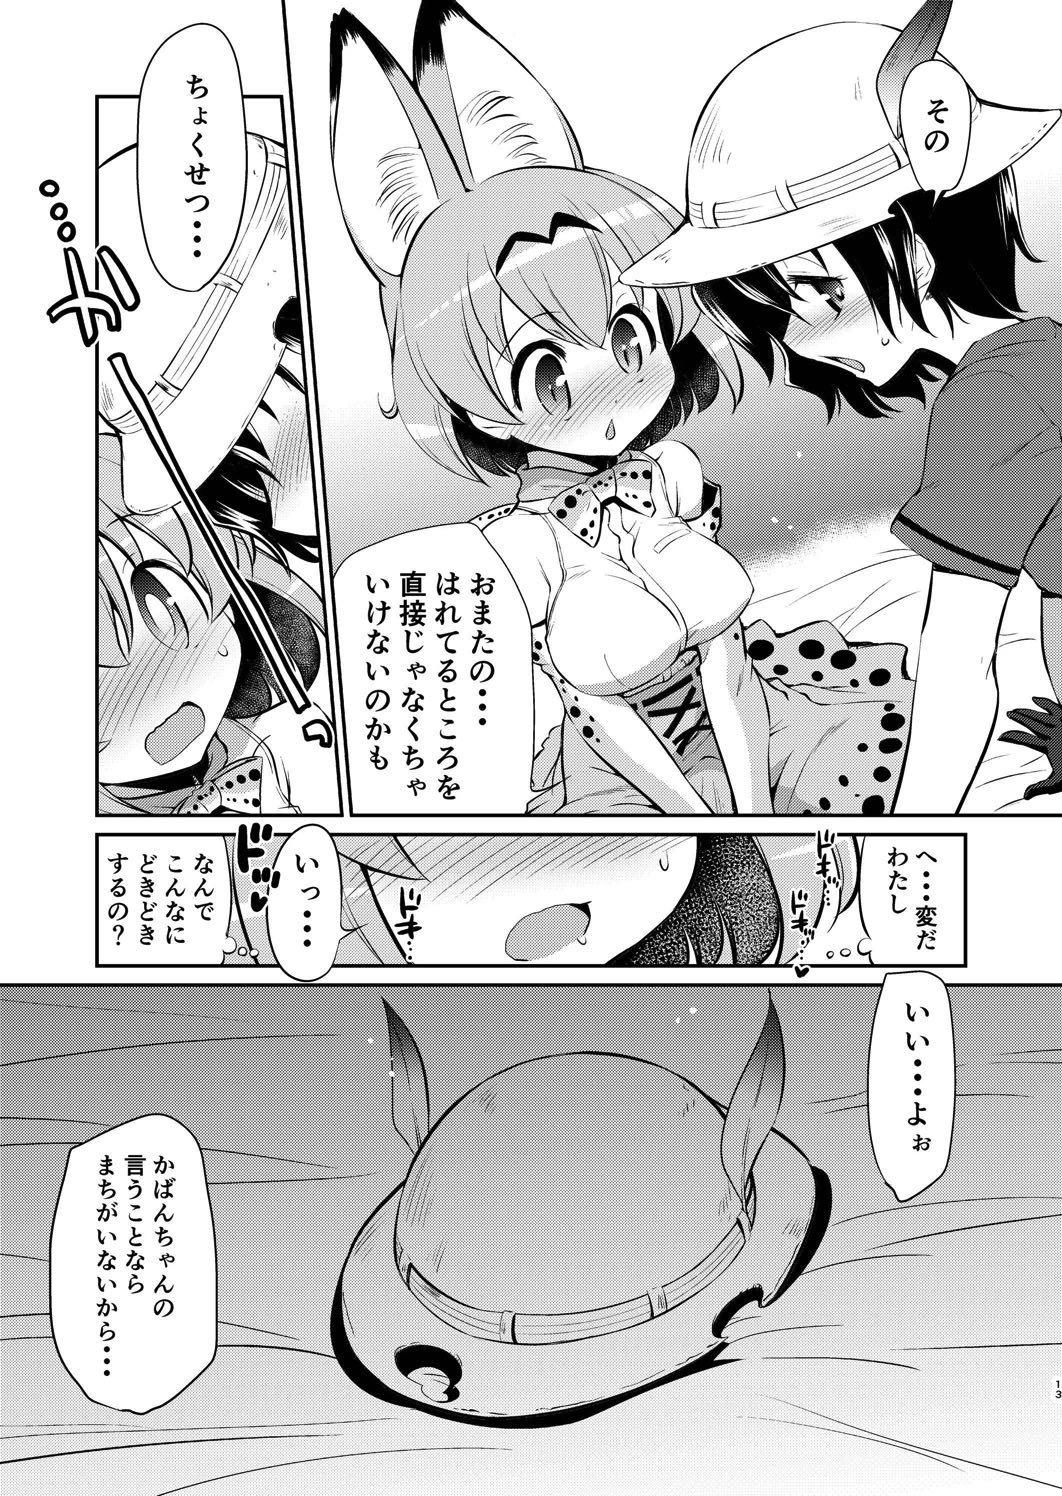 Casado Taihen! Serval-chan no Omata ga Harechatta! - Kemono friends Top - Page 12